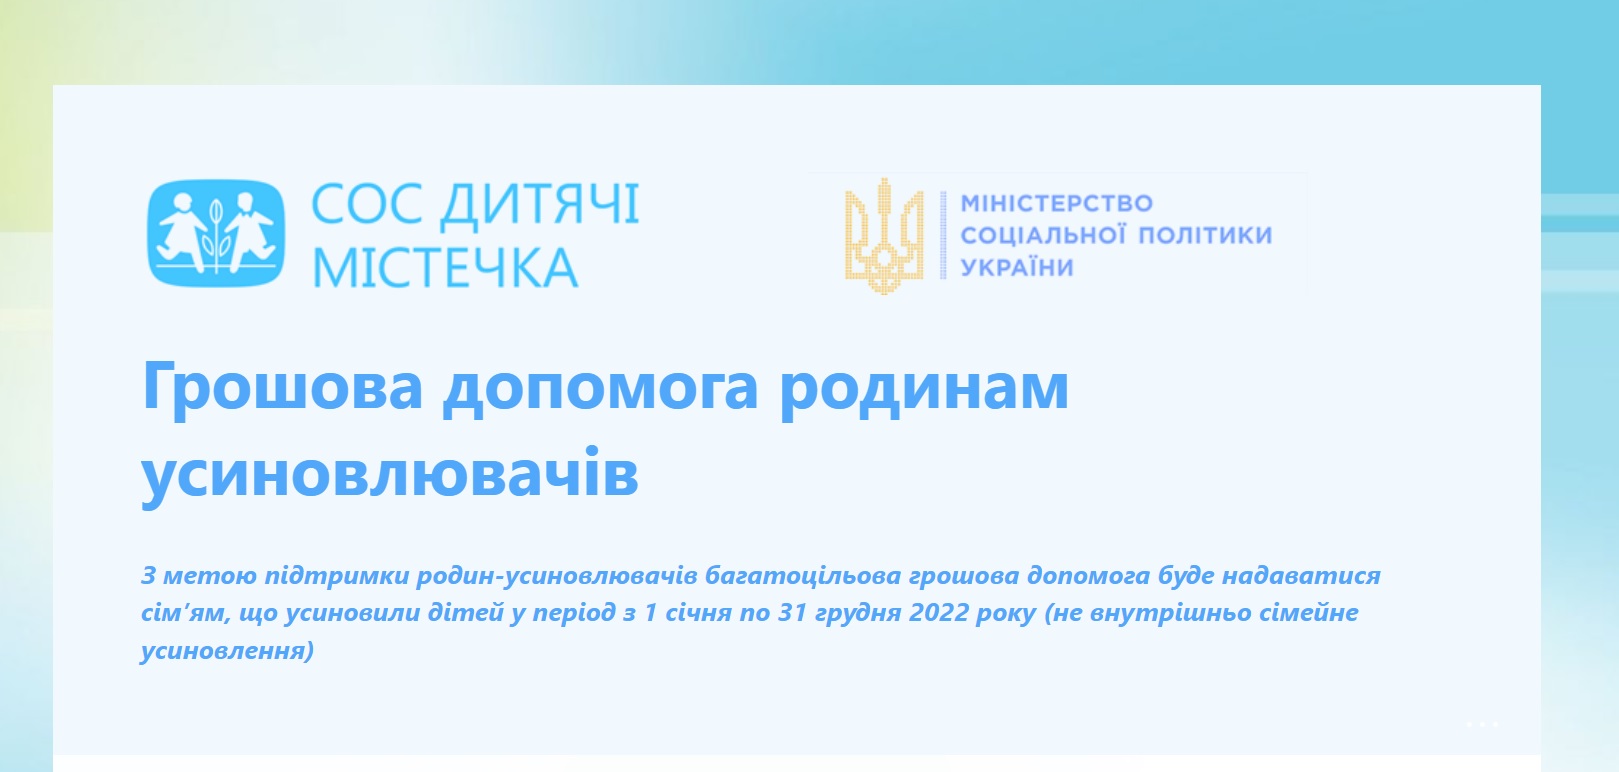 Департамент соцзахисту населення інформує: грошова допомога від СОС Дитячі Містечка України для сімей, які всиновили дітей у 2022 році 